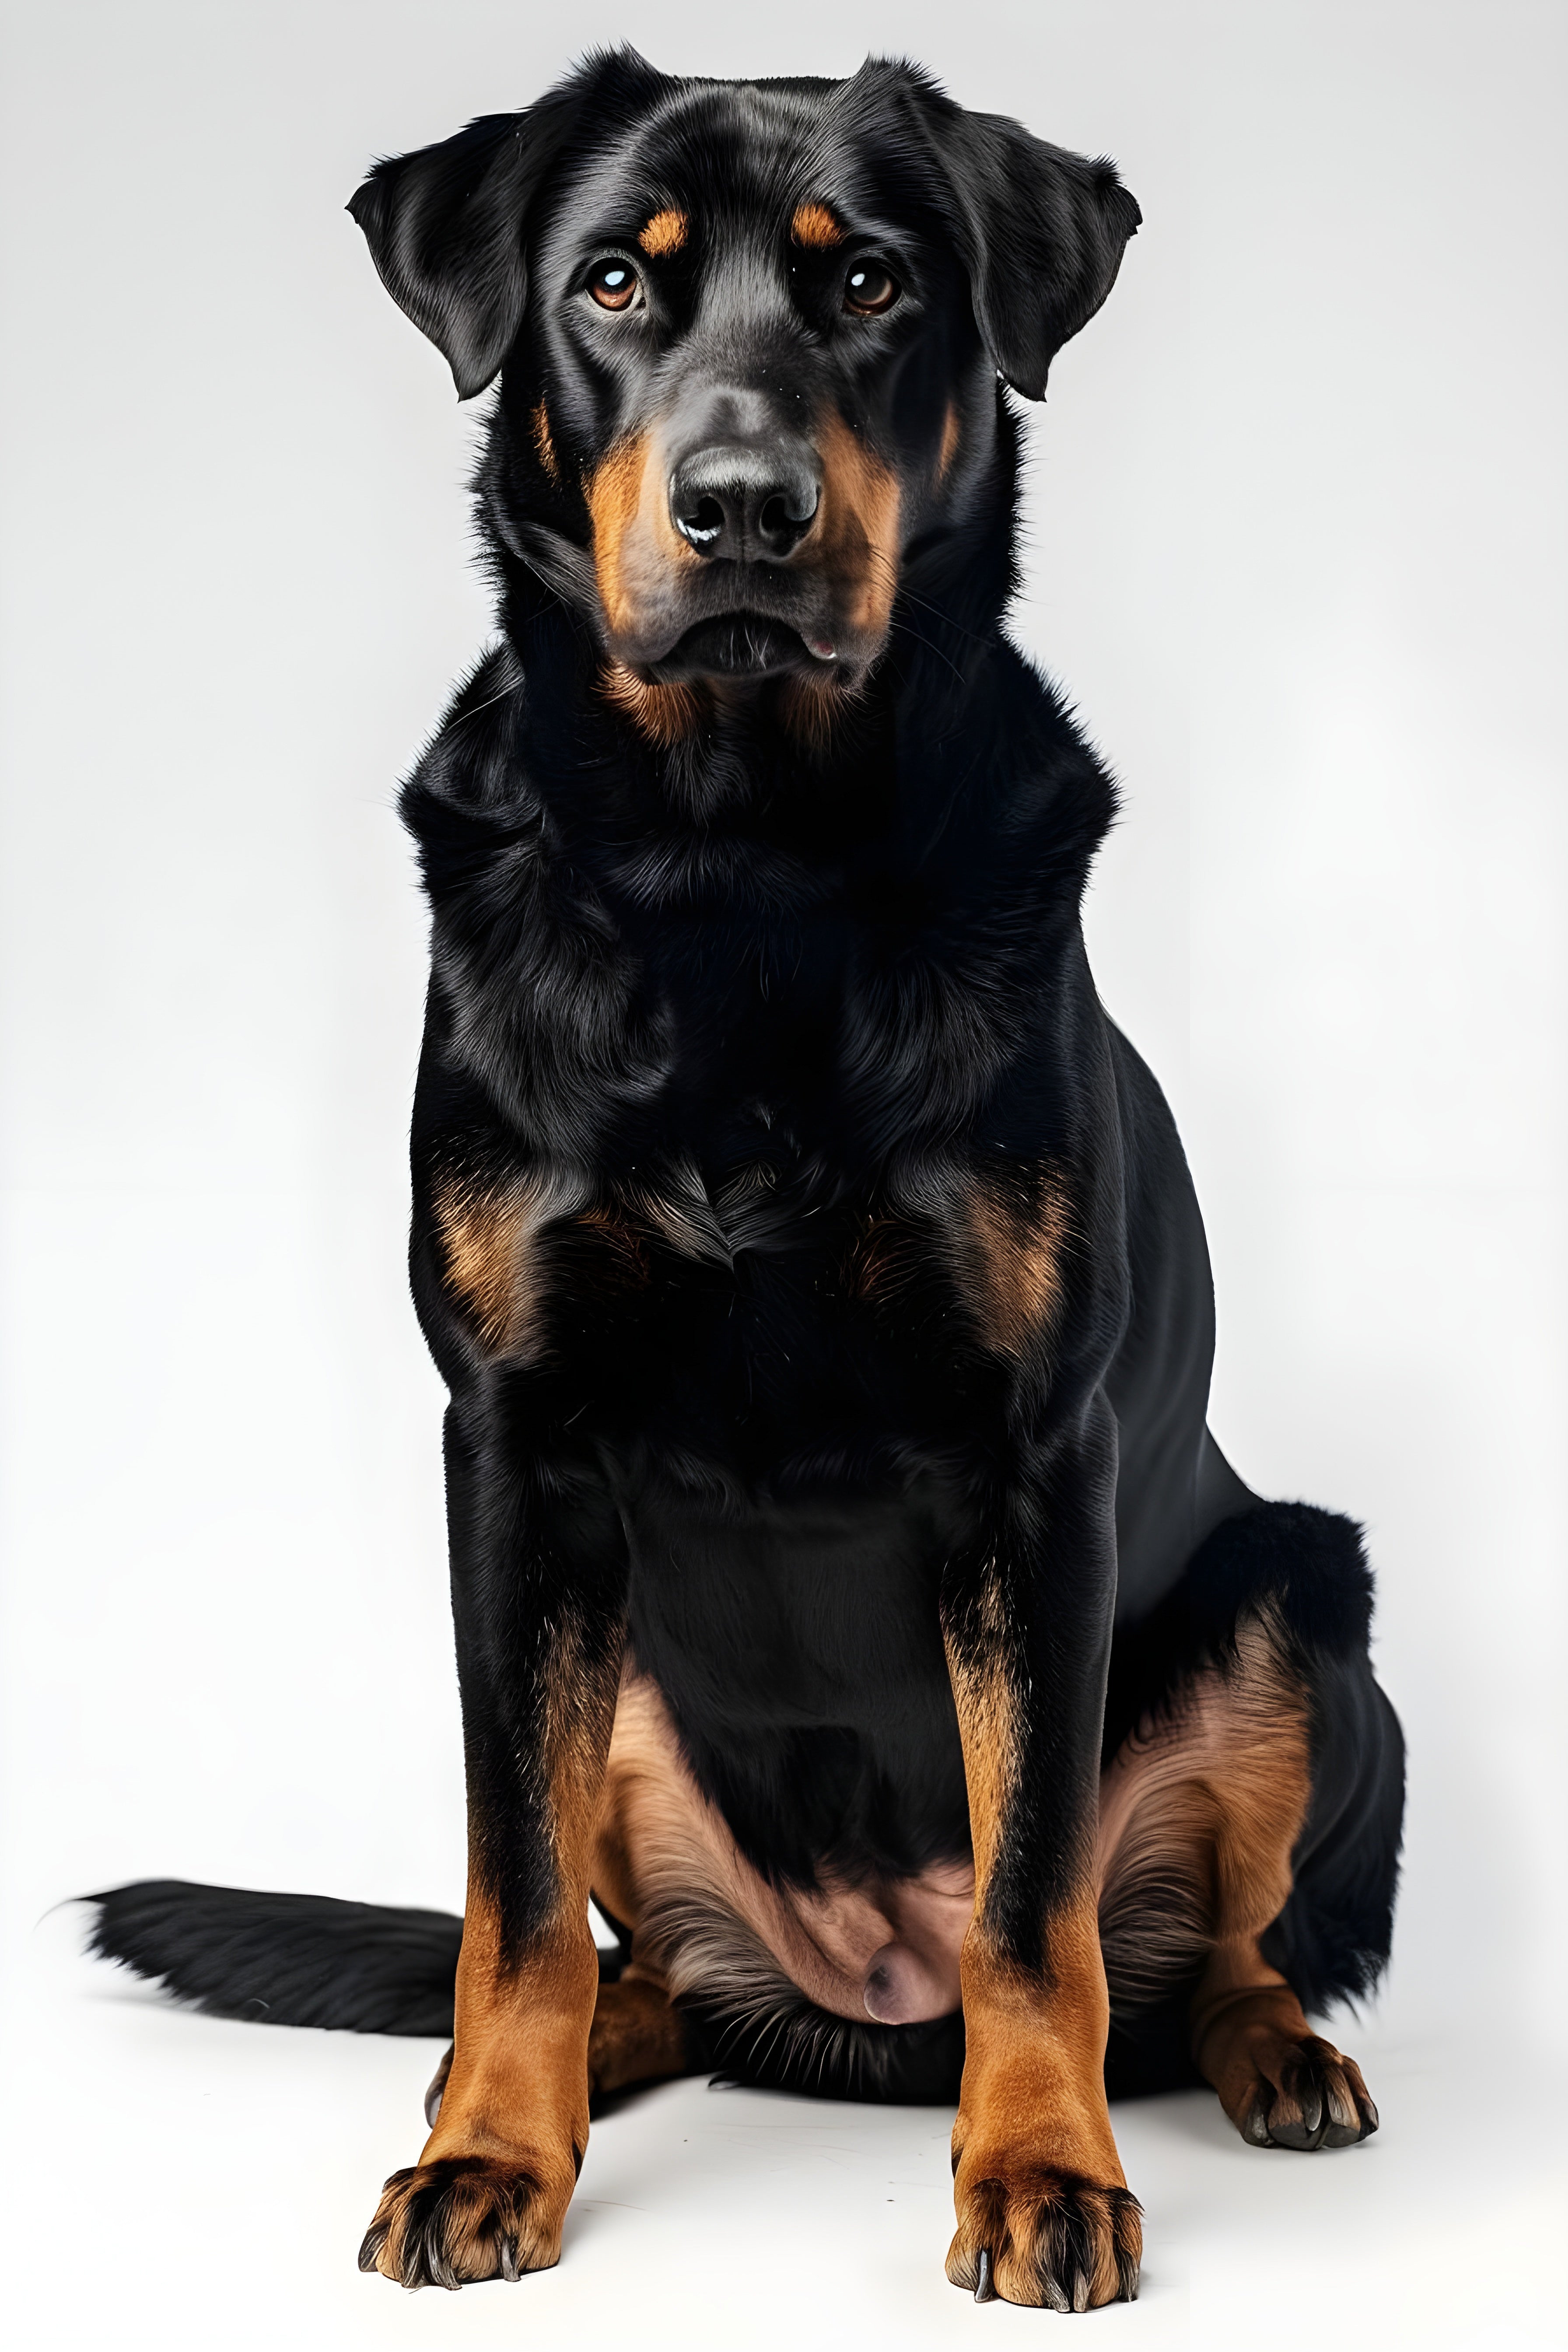 Image of a sitting Beauceron dog